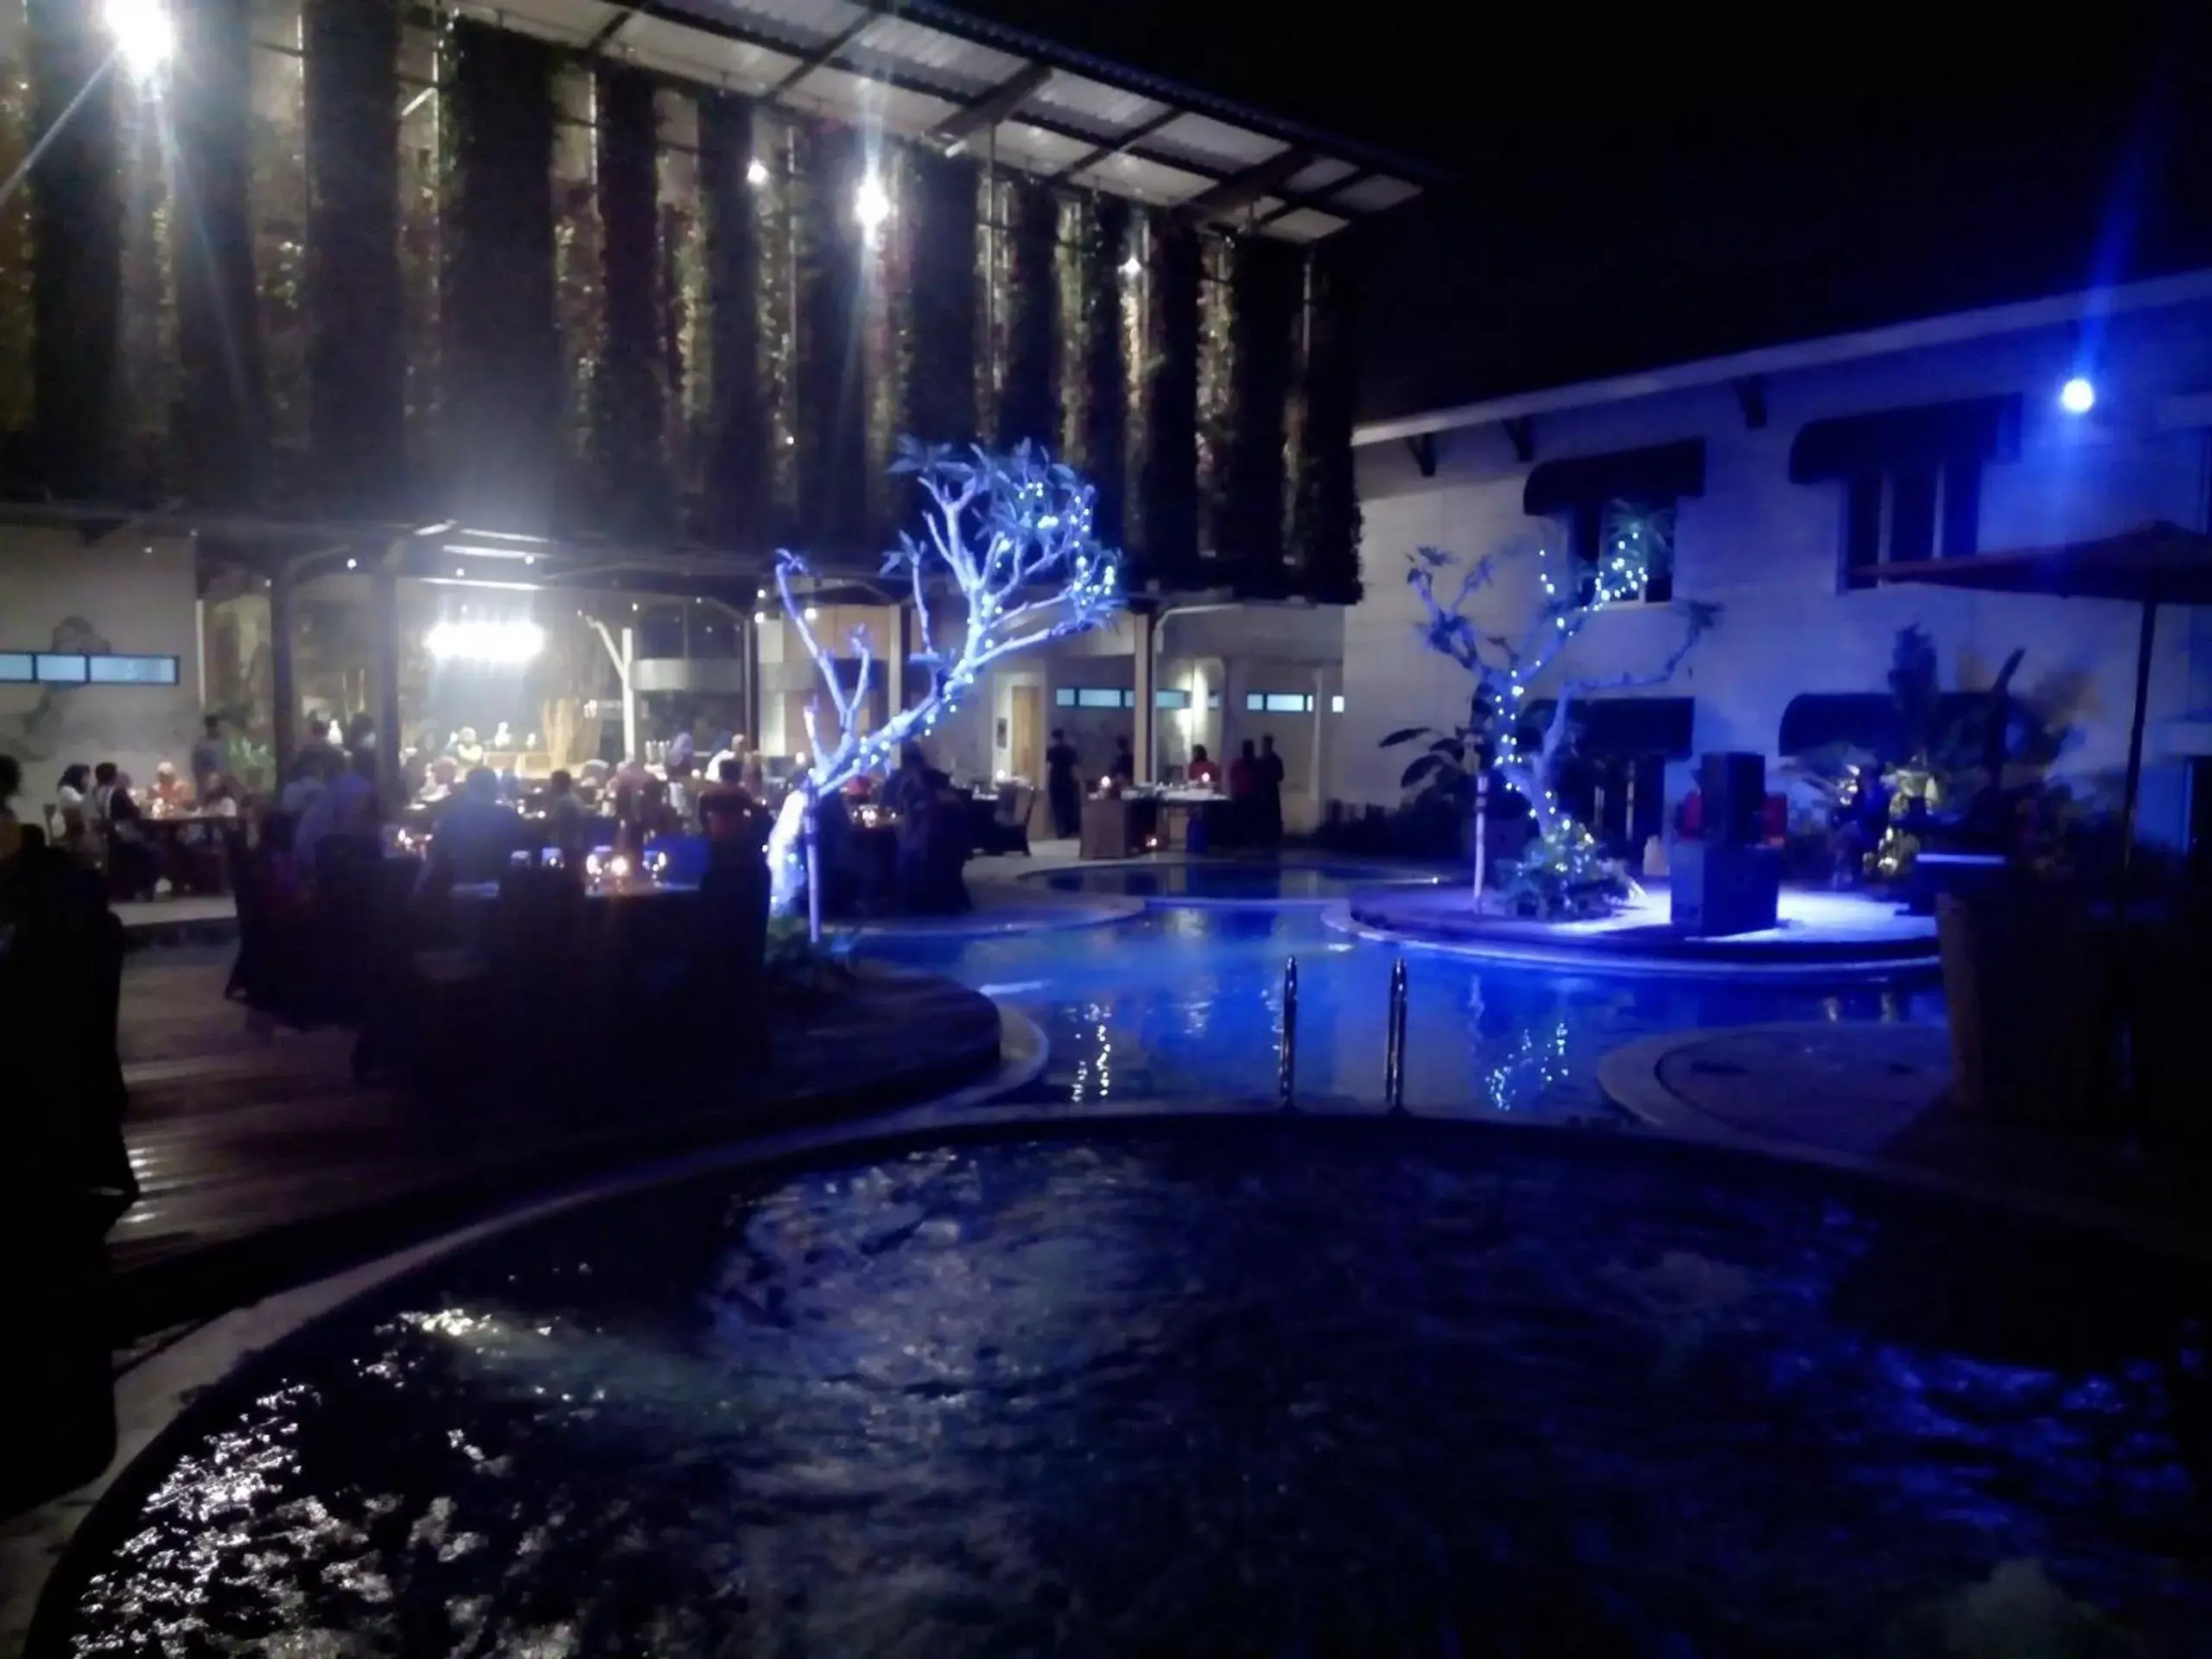 BBQ facilities, Swimming Pool in Patra Bandung Hotel